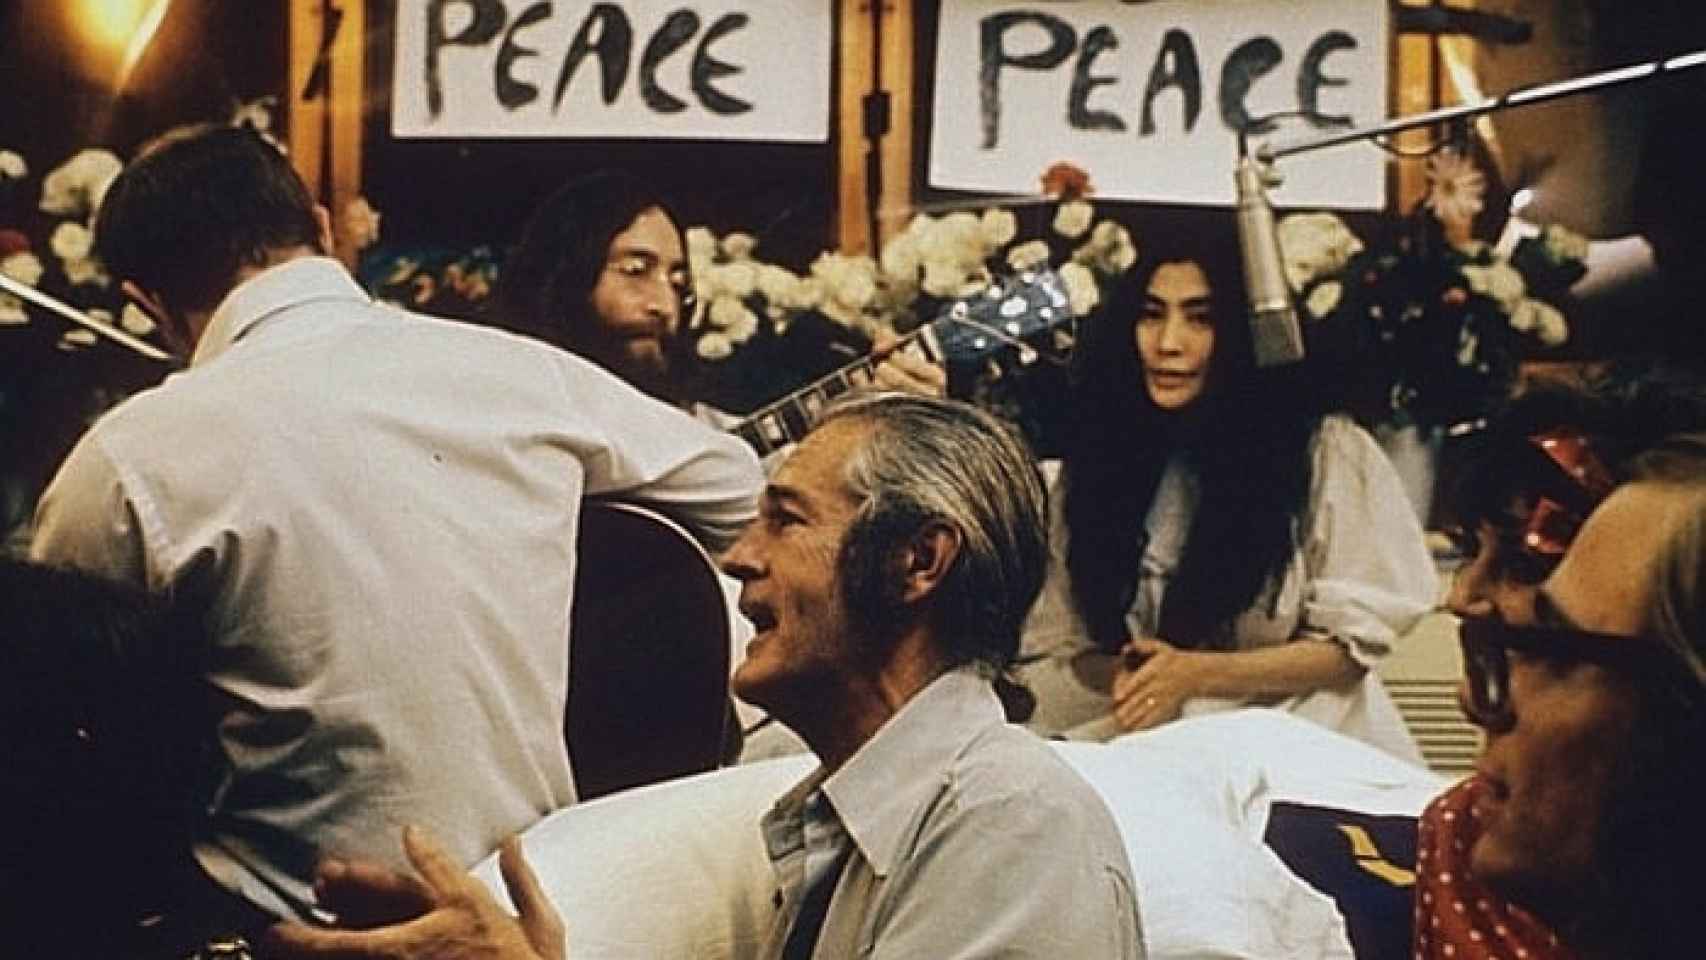 Grabando el disco 'Give Peace a Chance' en 1969. Timothy Leary al frente, al fondo John Lennon y Yoko Ono. Foto: Roy Kerwood